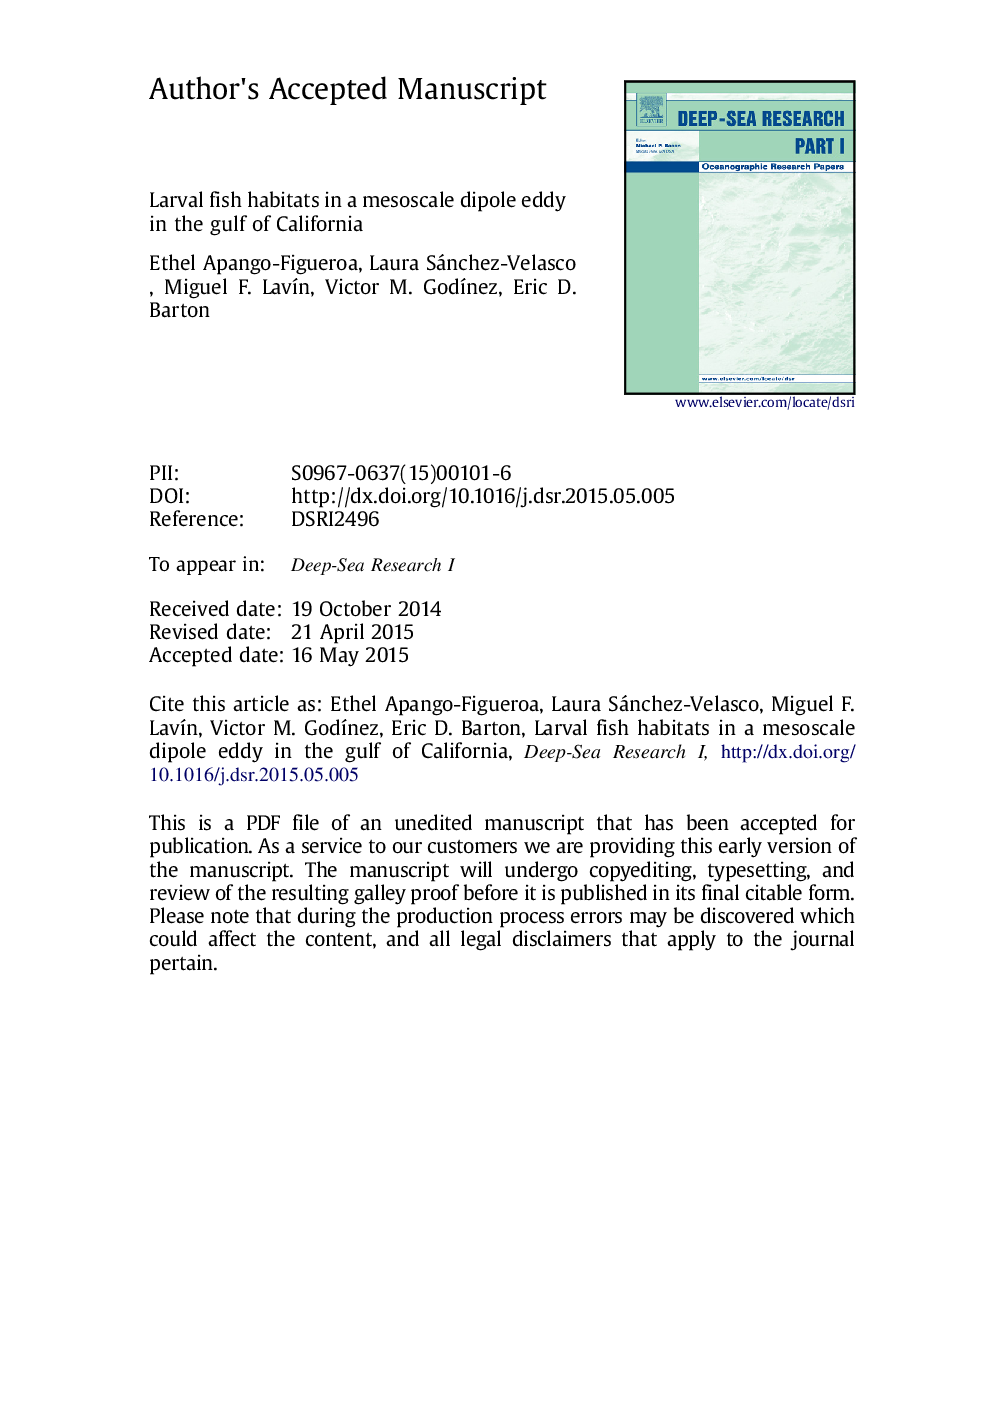 زیستگاه های ماهیان لارو در یک ناحیه ماتوسال در دریای خلیج کالیفرنیا 